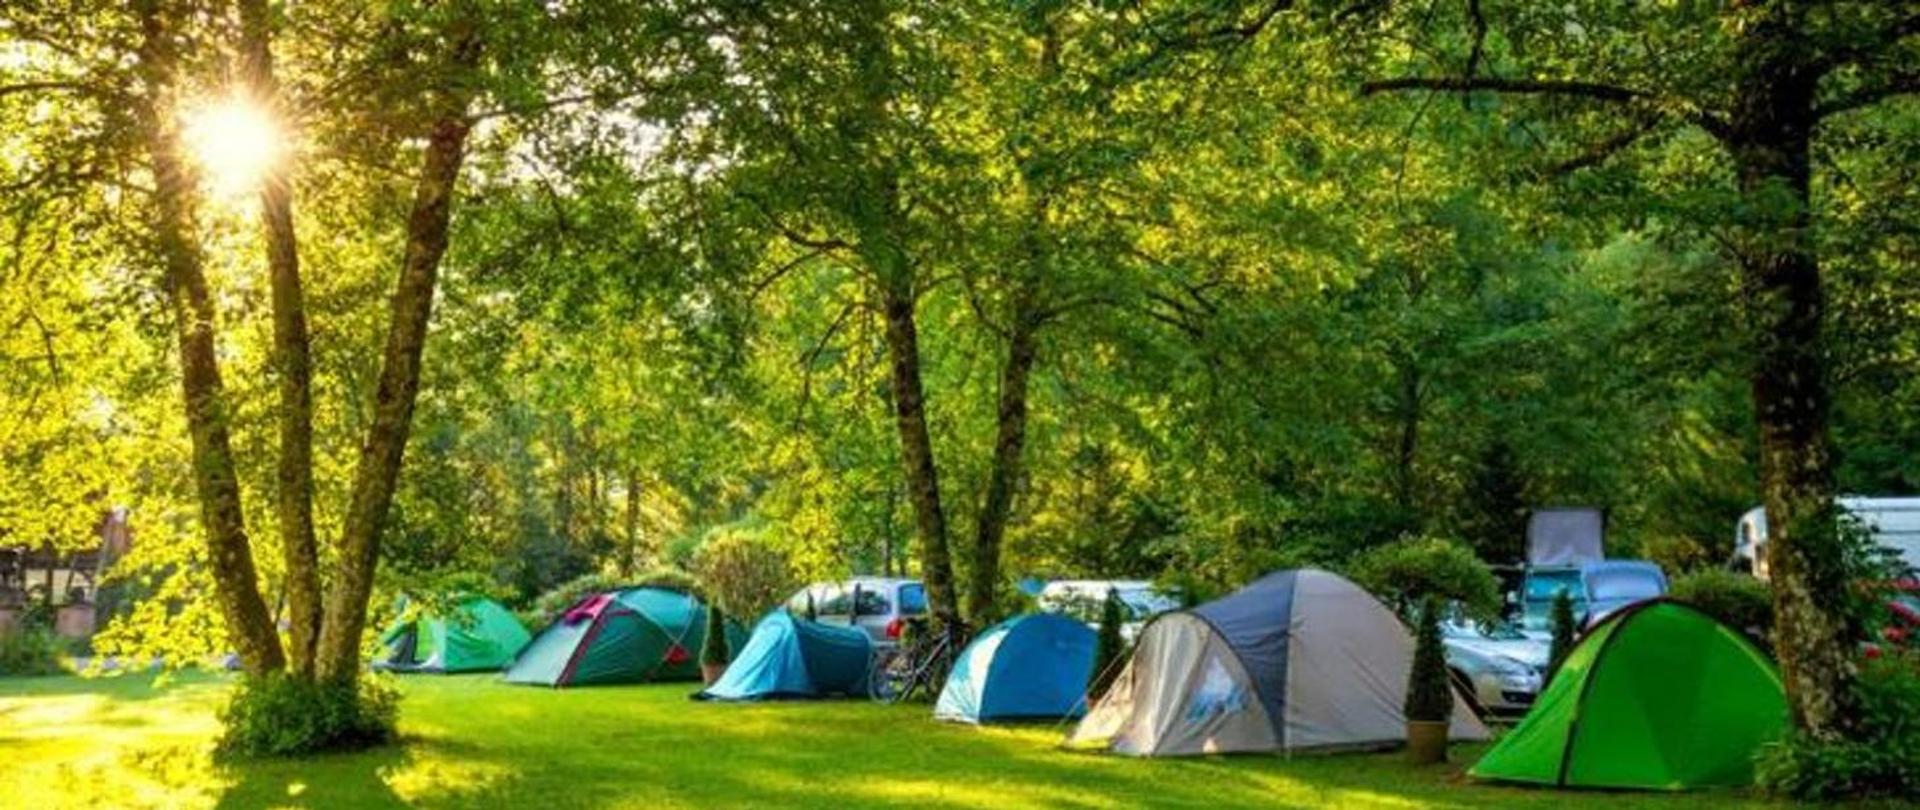 Na zdjęciu widoczne rozłożone namioty wśród drzew i trawy, w oddali widać również auta oraz przedzierające się słońce pomiędzy drzewami.